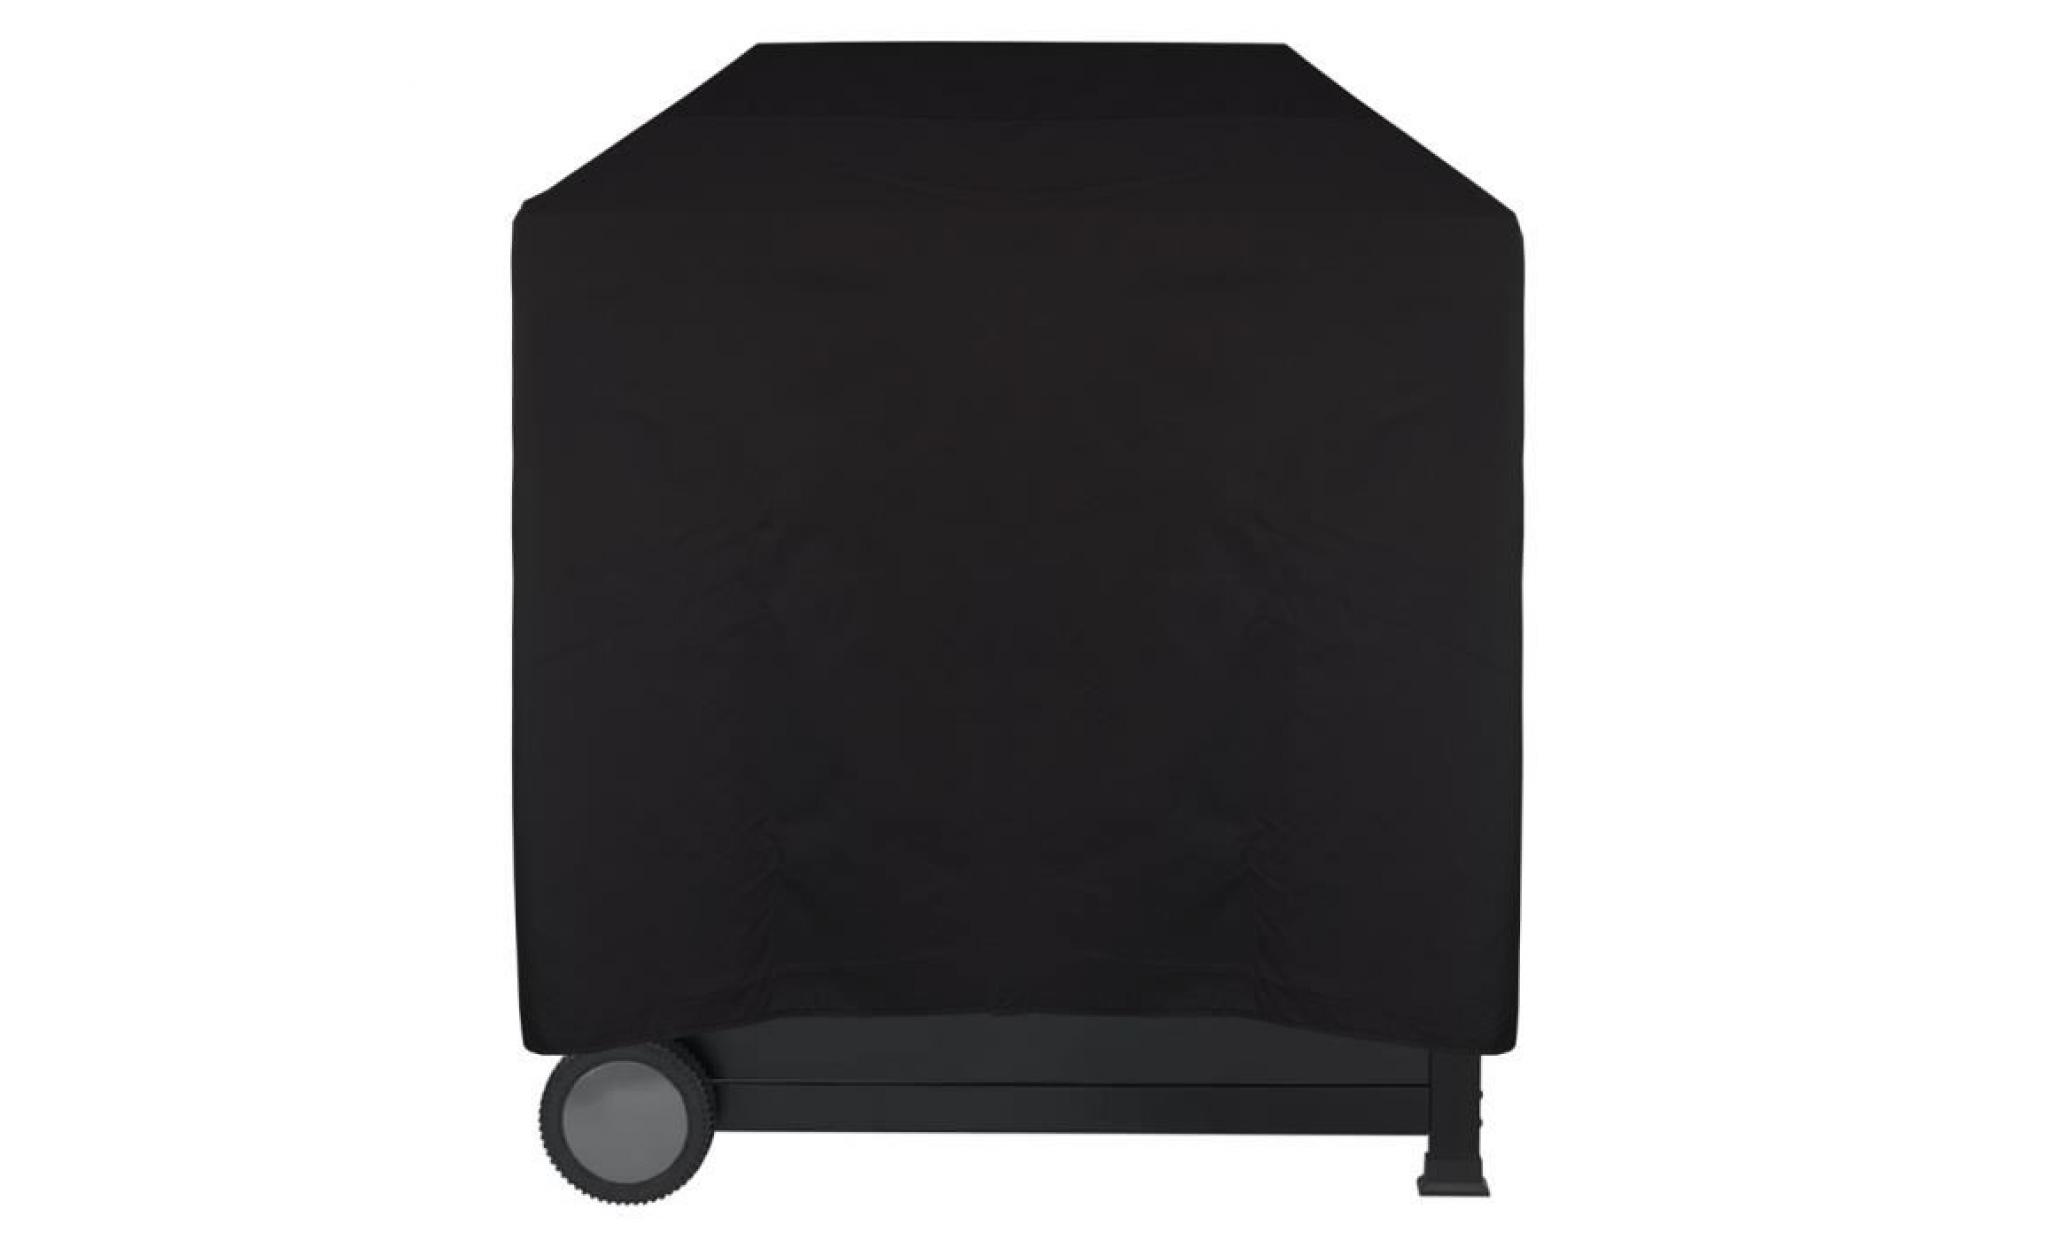 housse pour barbecue imperméable lounge noir, m 78 x 58 x 78 cm   protège contre la pluie, la saleté et les rayons du soleil